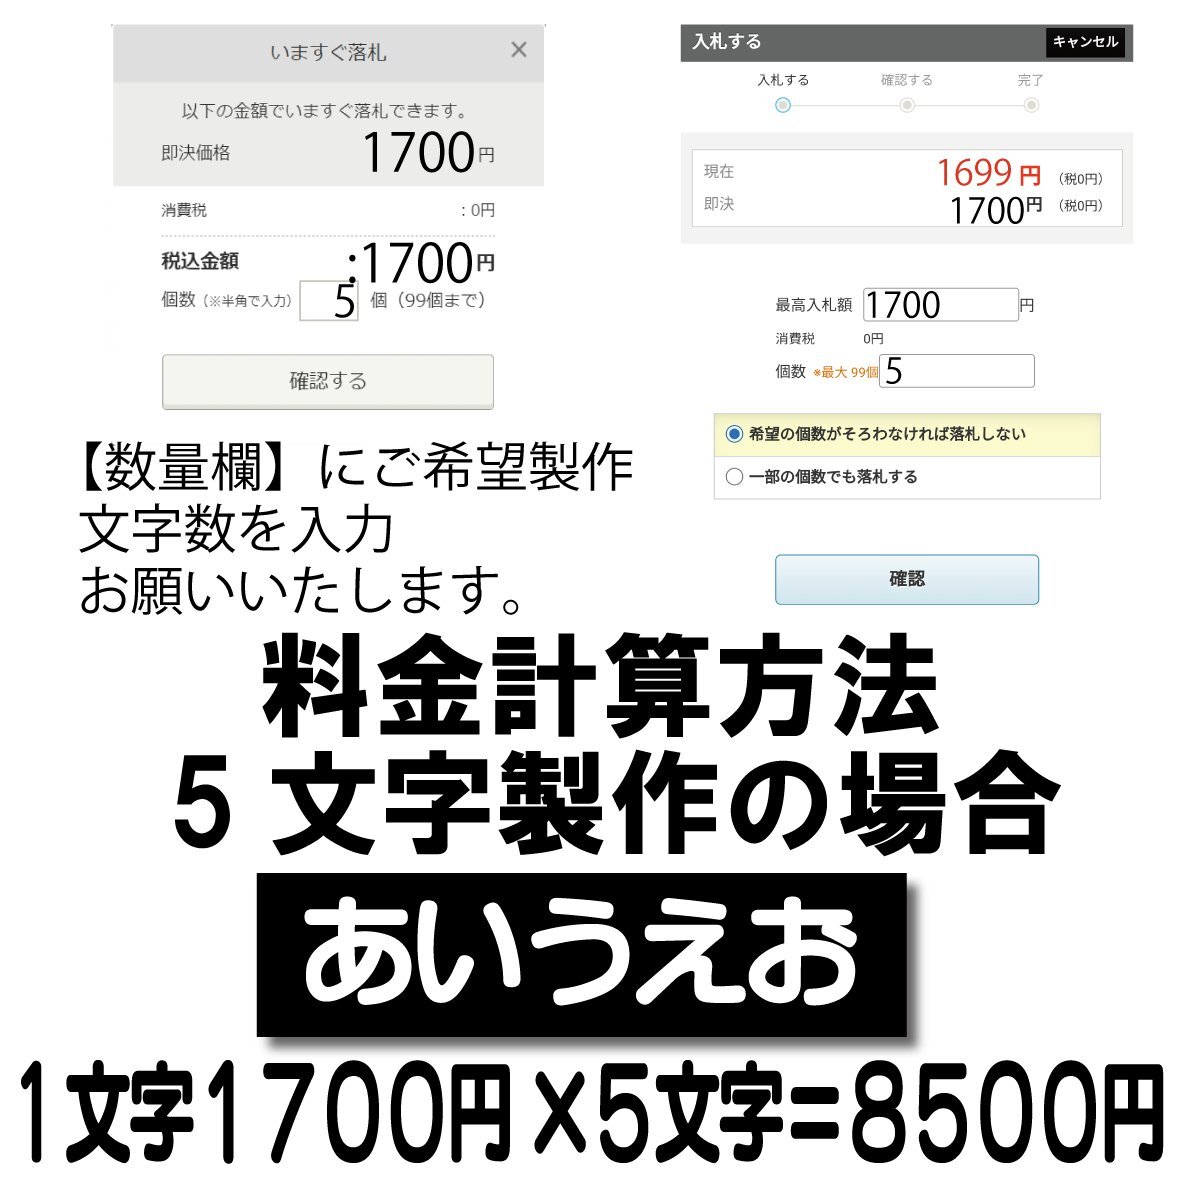 Если количество символов составляет 5 символов, это будет 8500 иен.